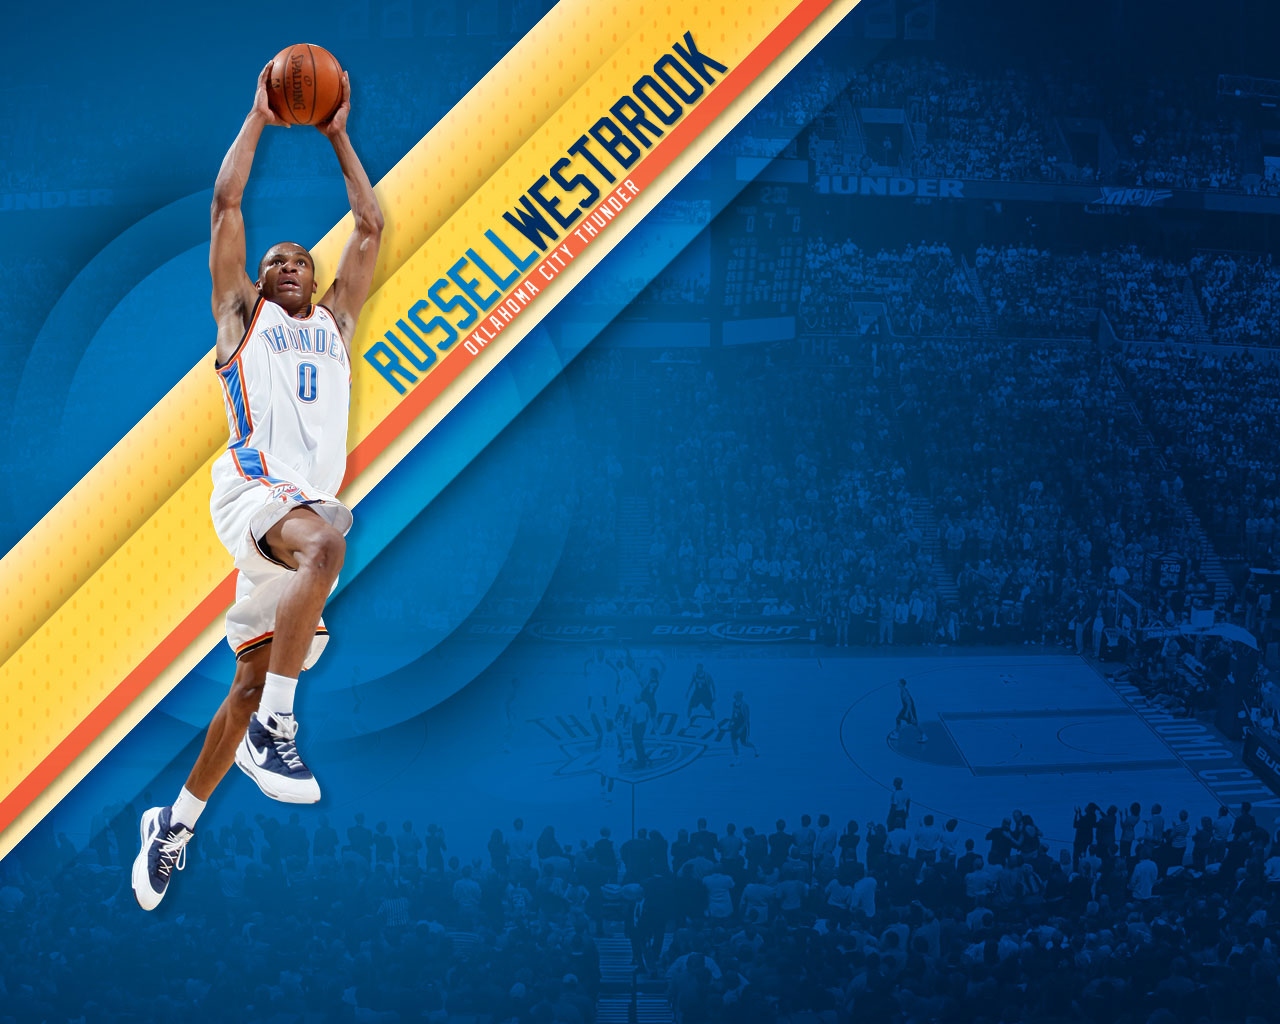 Russell Westbrook Dunk Wallpaper - Basketball Hd - HD Wallpaper 